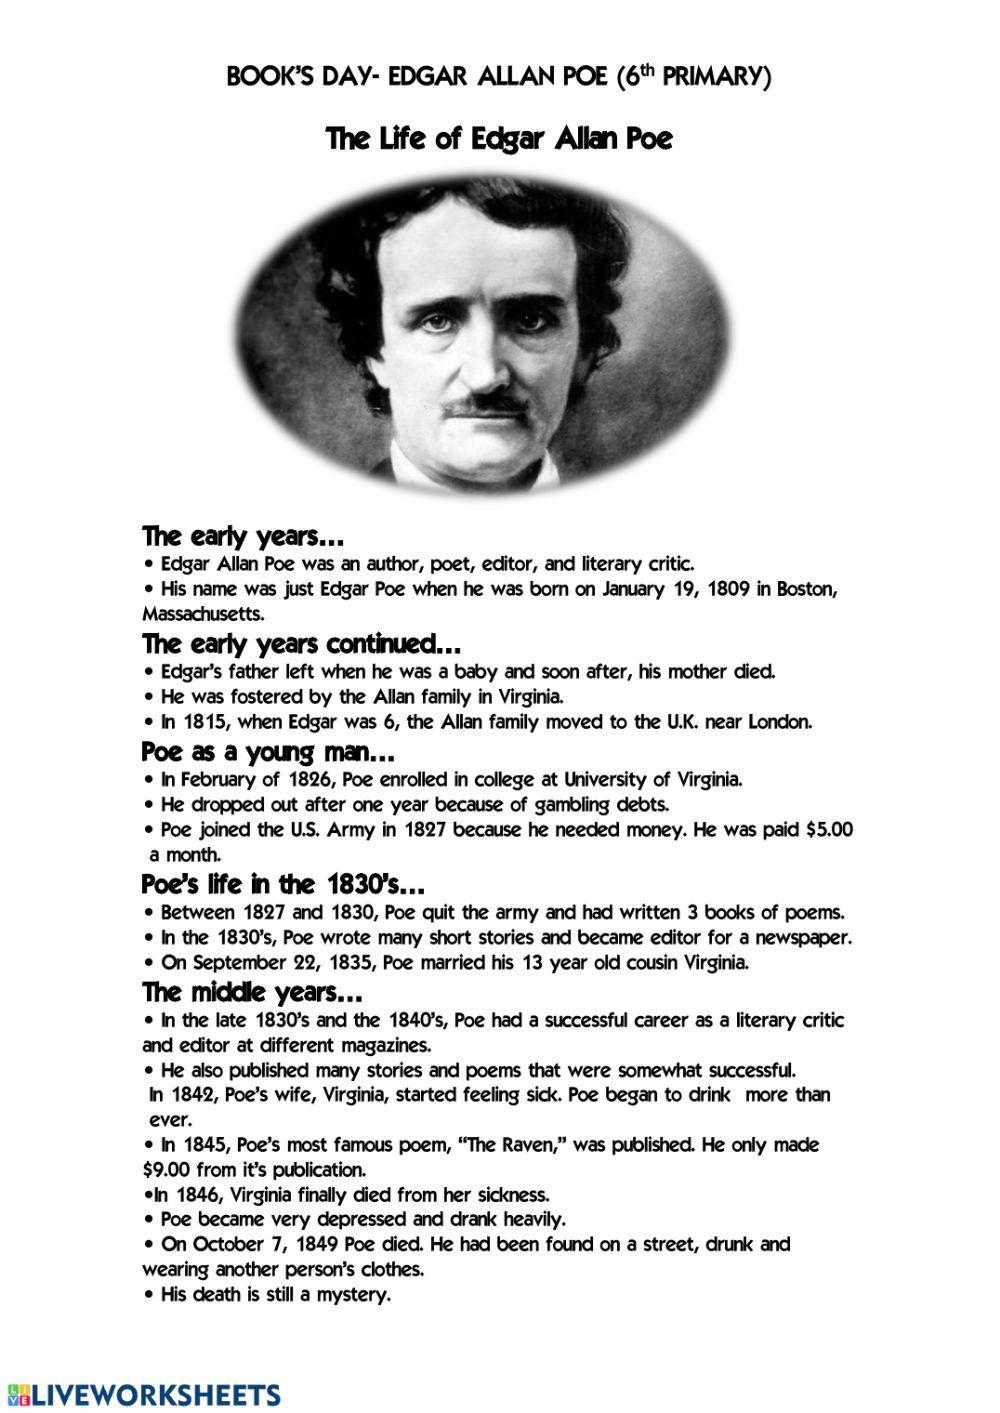 Book's Day- Edgar Allan Poe